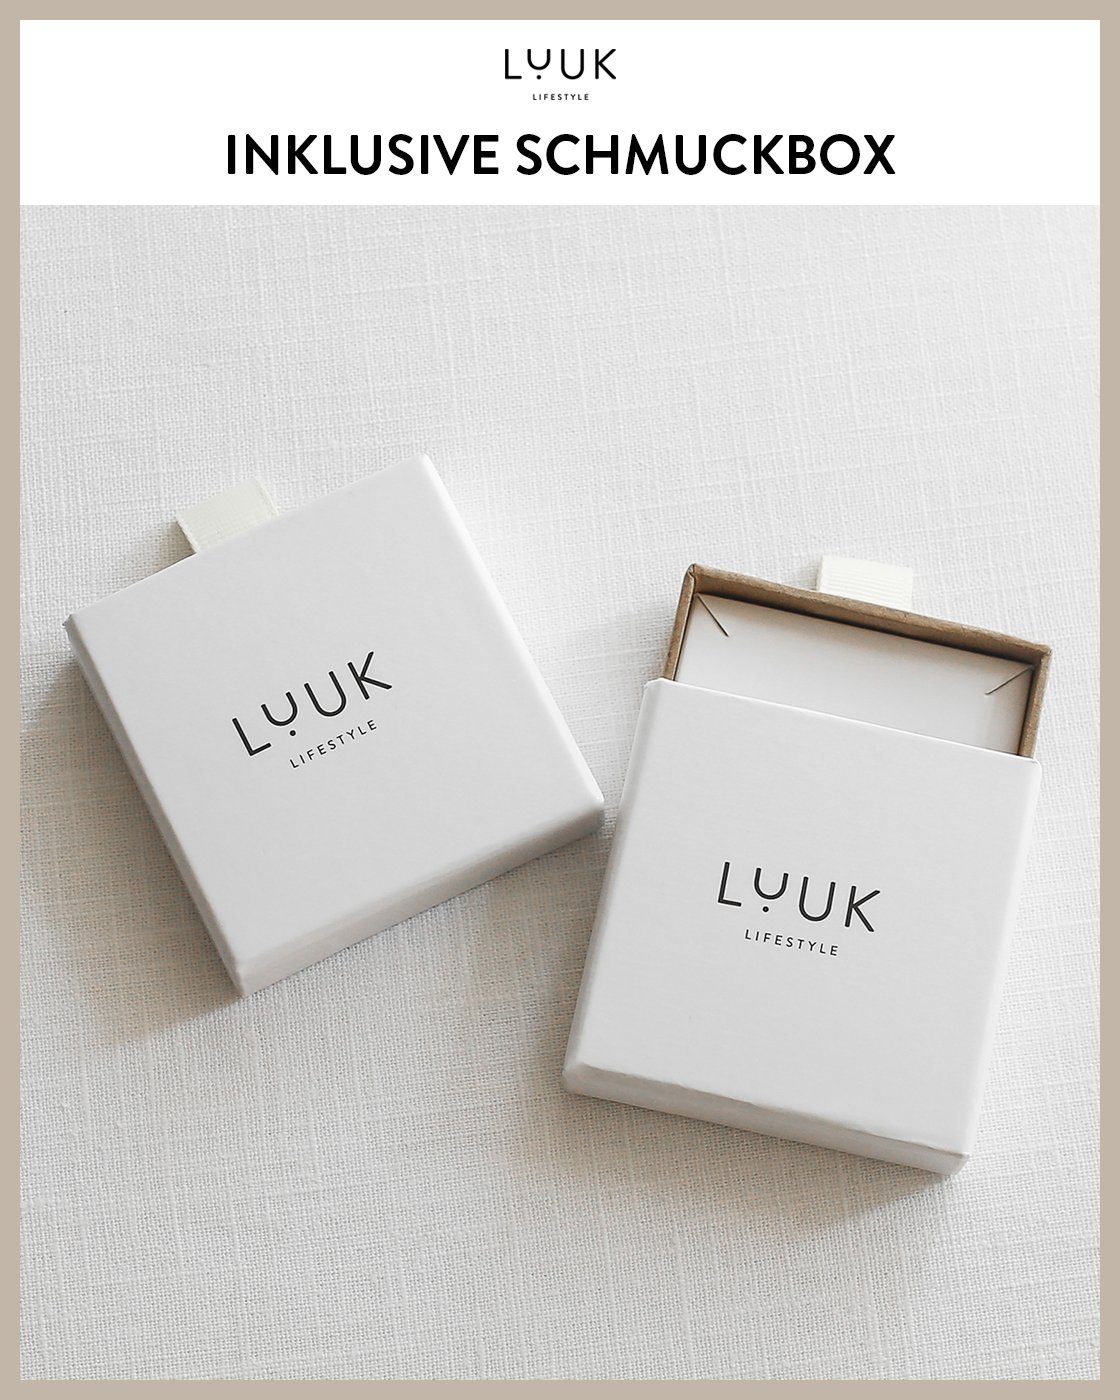 LUUK Silber Paar inklusive Hand, wasserfest hautverträglich, modernes Design, alltagstauglich, schöner Ohrstecker LIFESTYLE Schmuckbox & Hamsa